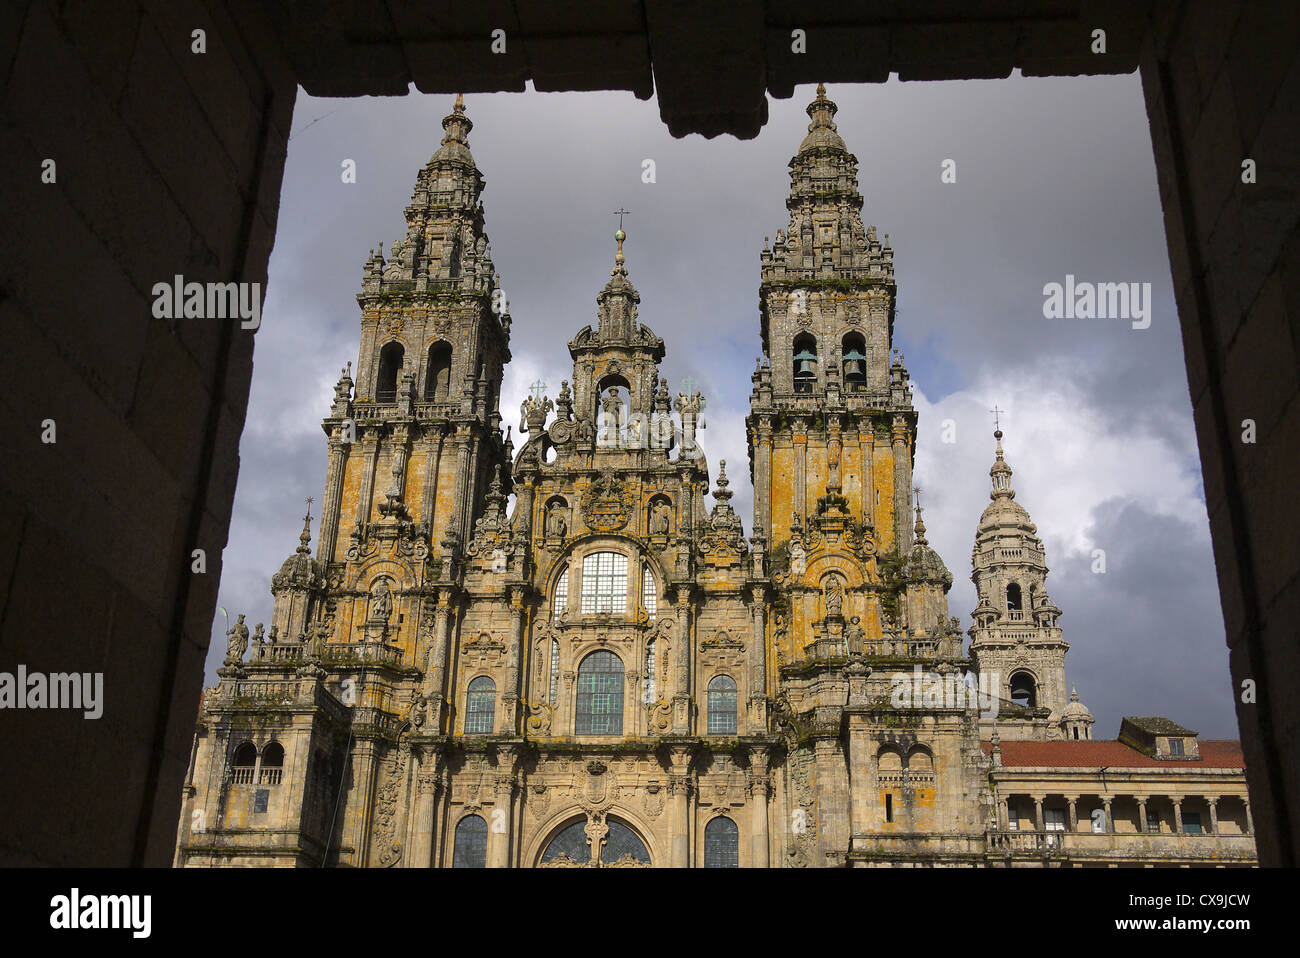 Santiago de Compostela, Spain. The Cathedral of Saint James. Stock Photo